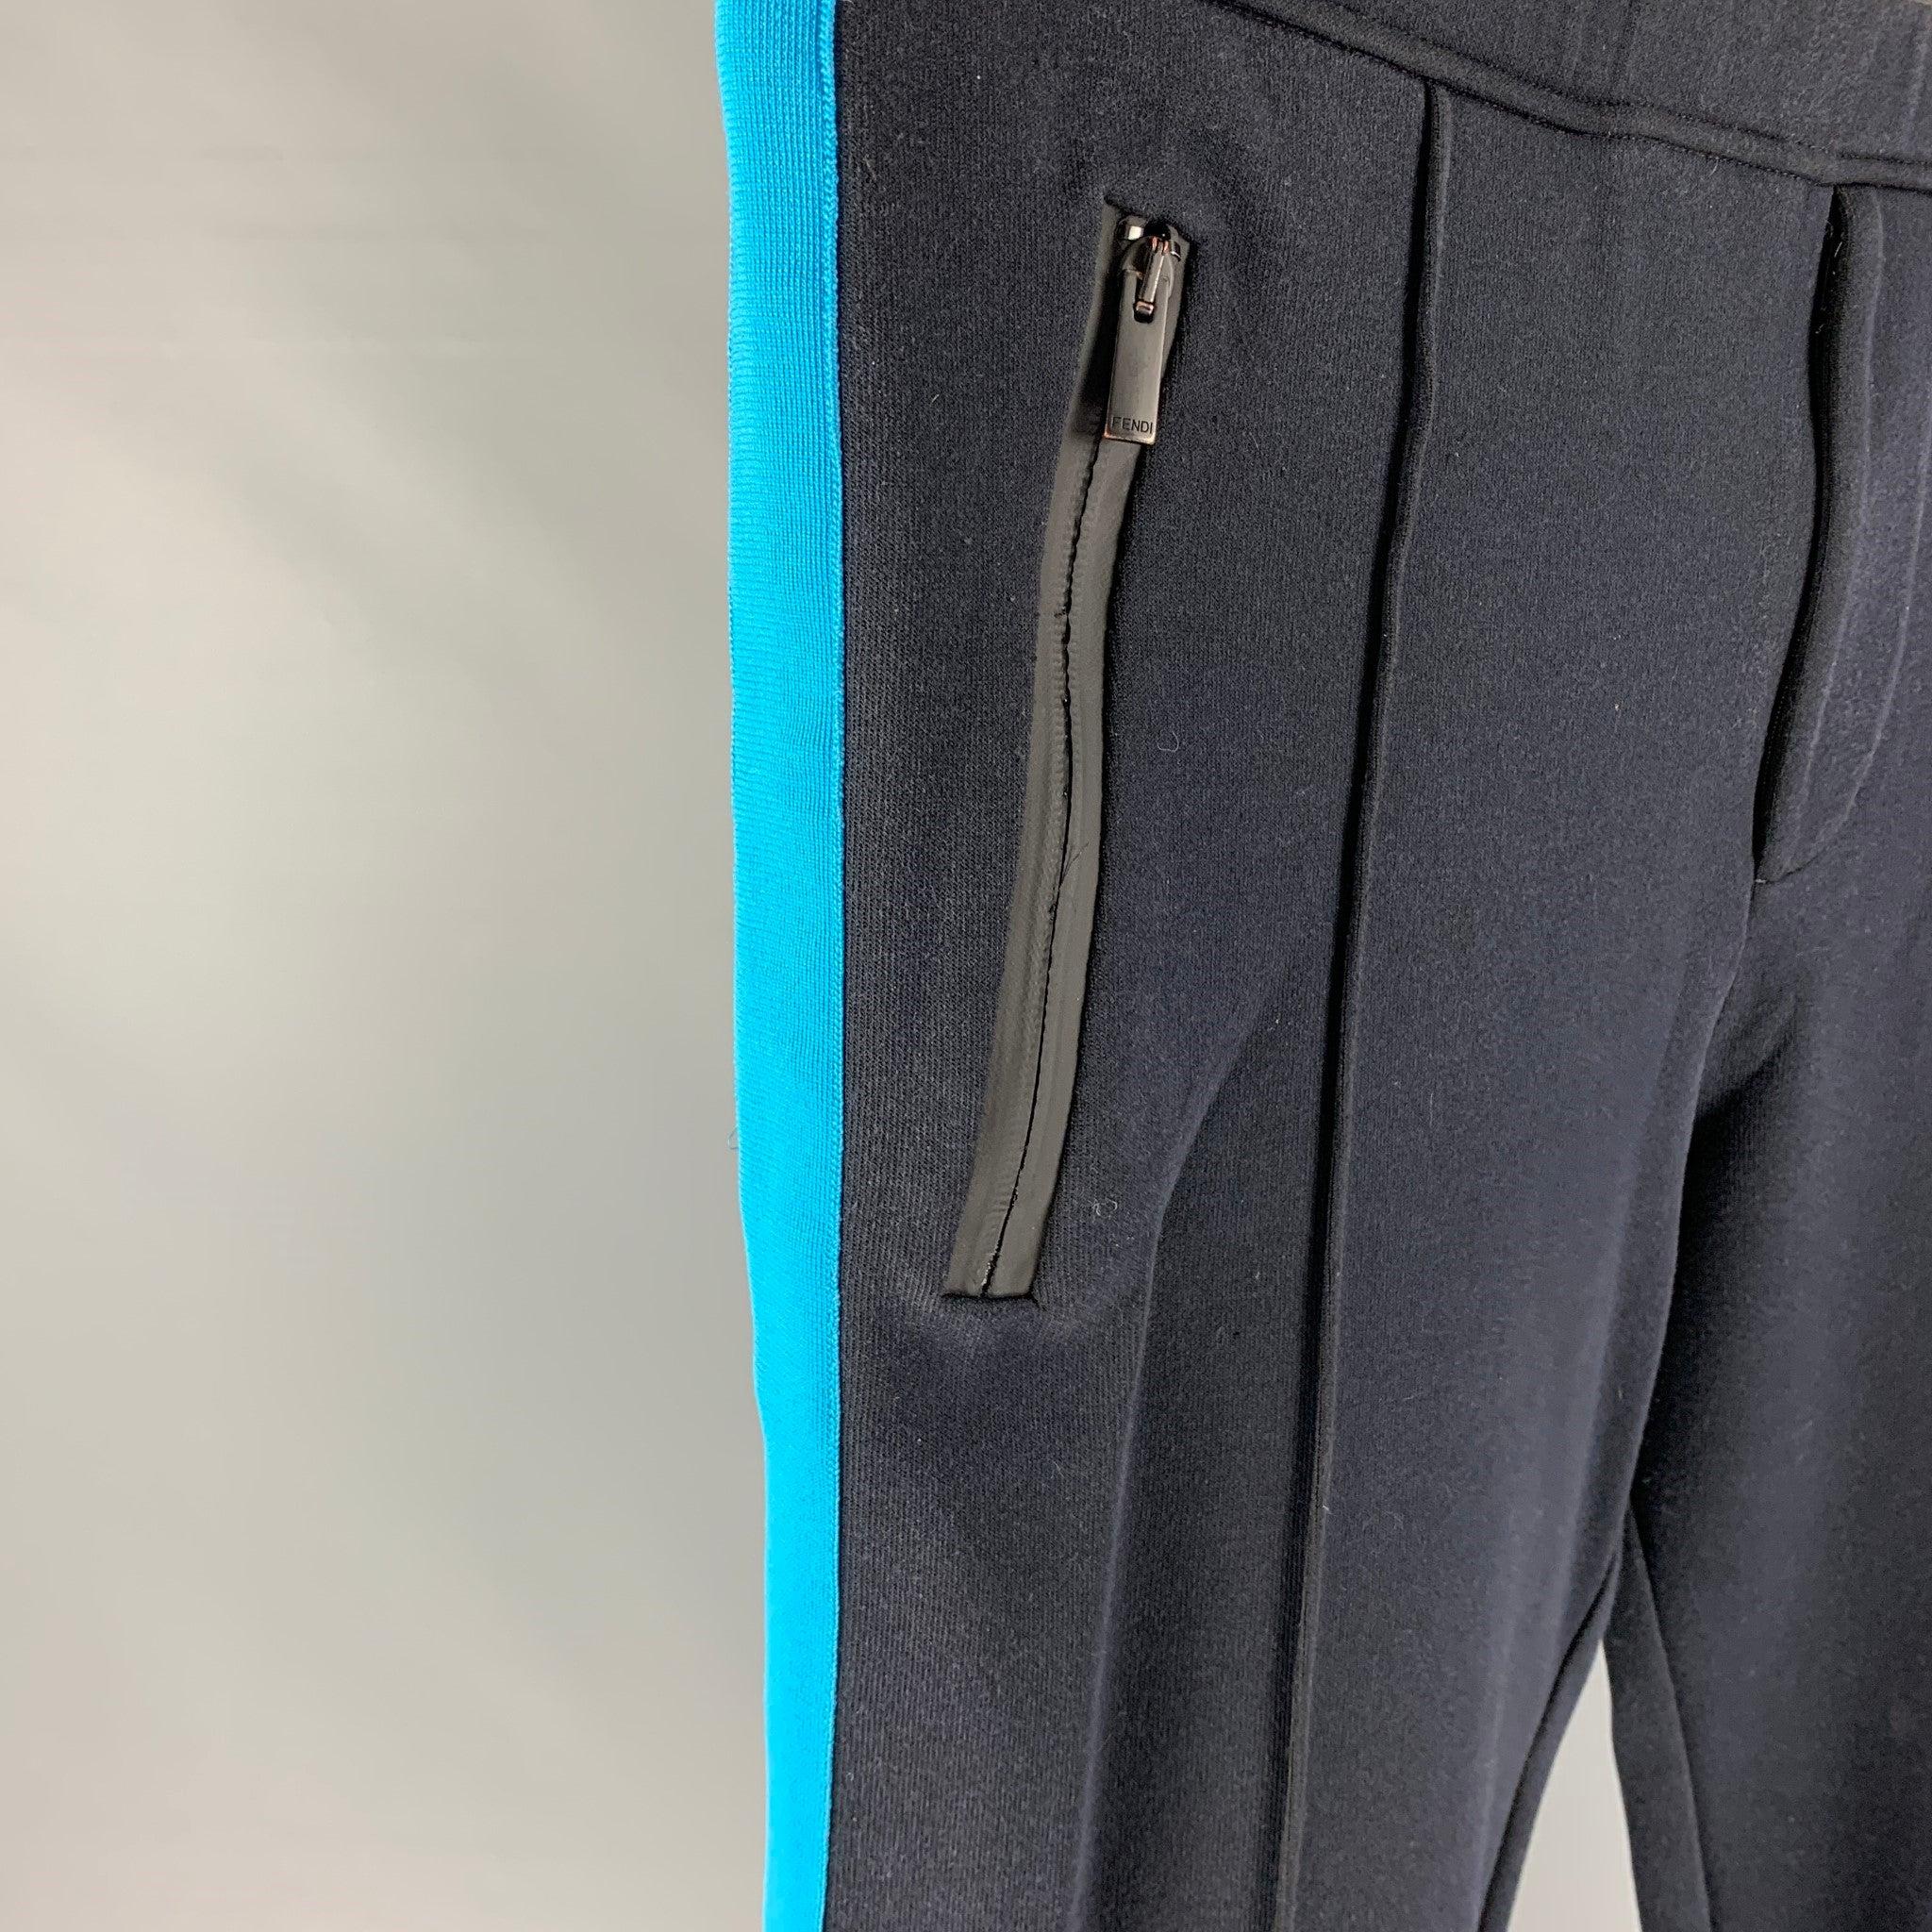 Le pantalon de survêtement Fendi est en coton mélangé bleu marine avec des rayures bleues. Il présente des plis sur le devant, des poches zippées, une taille élastique et une fermeture à glissière. Fabriquées en Italie.
Très bien
Etat d'occasion.